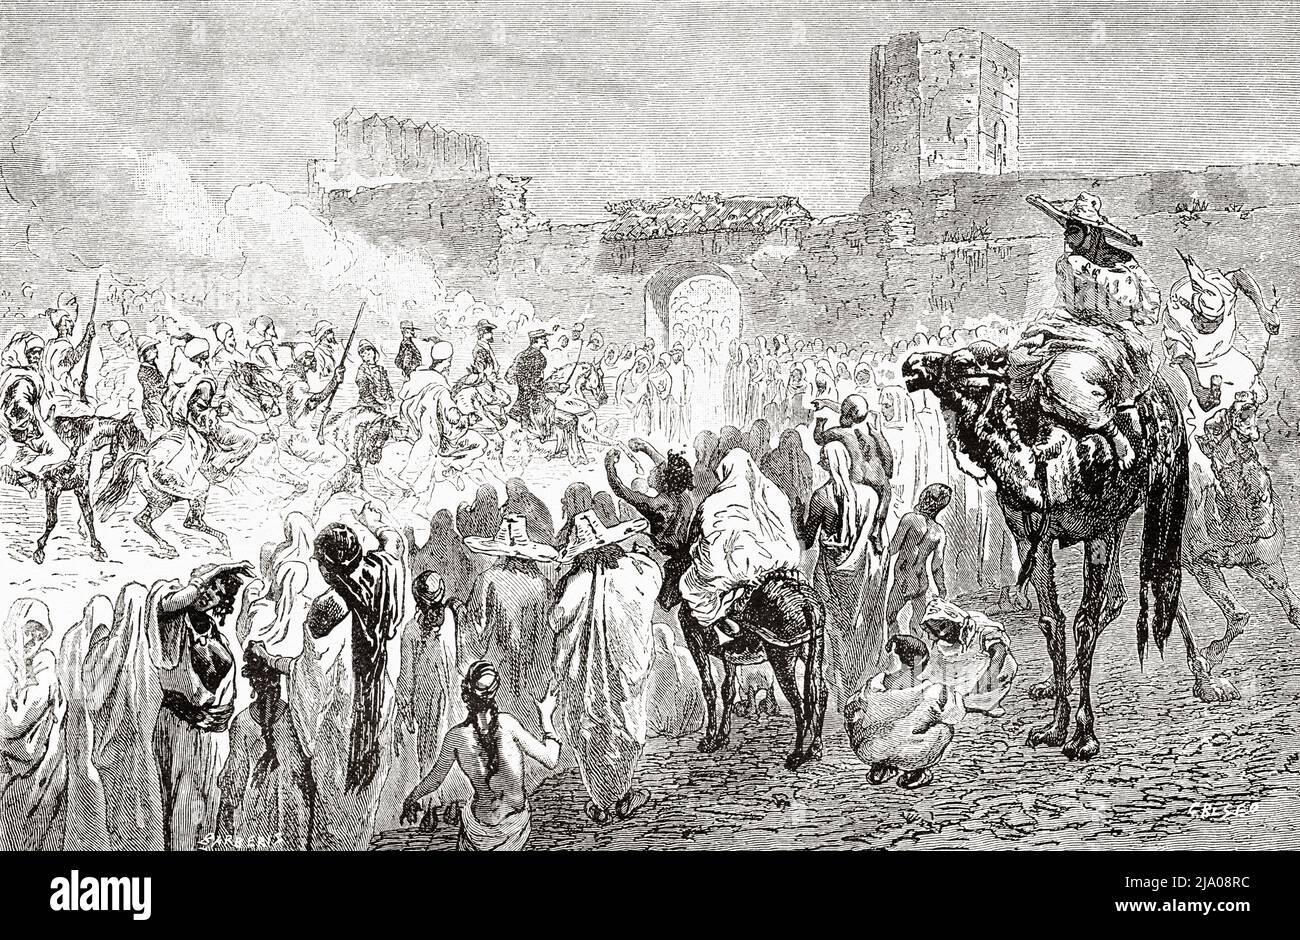 Eintrag des italienischen Botschafters in die marokkanische Stadt Fez im Jahr 1875, Fes el Bali, Marokko. Nordafrika. Marokko von Edmondo de Amicis 1875. Le Tour du Monde 1879 Stockfoto